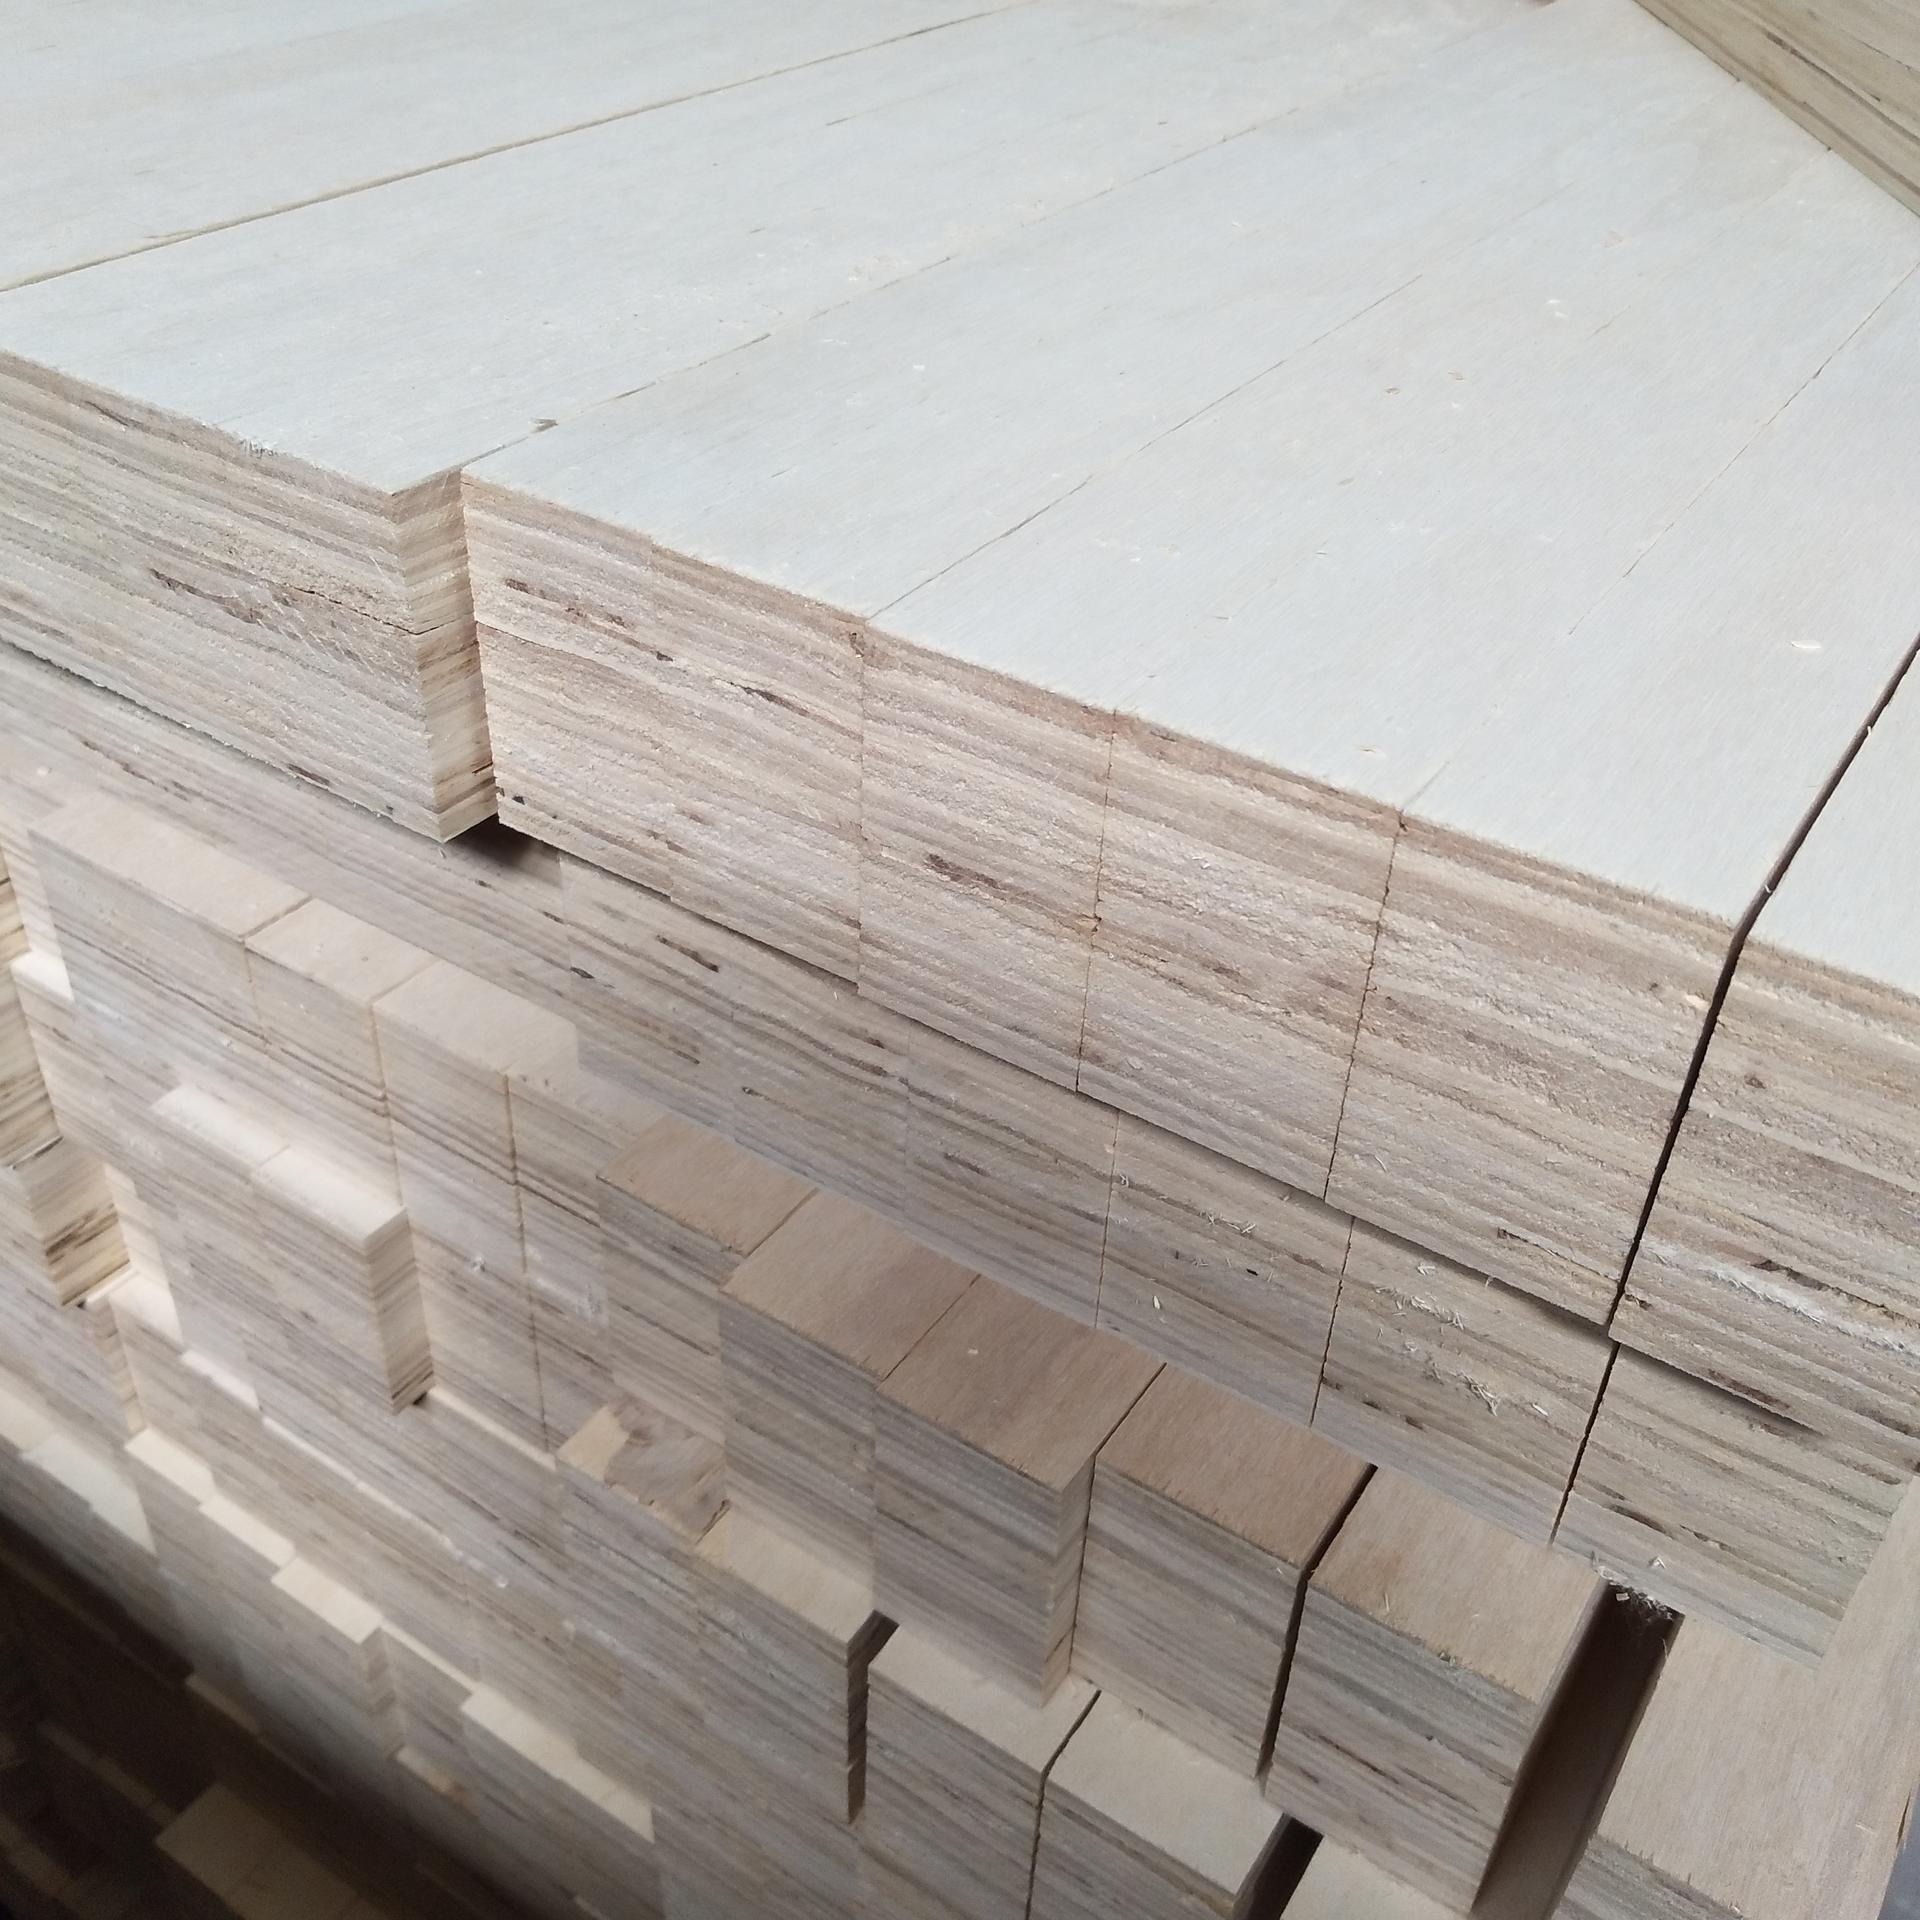 沭阳连盛木业生产厂家生产大型包装箱用杨木多层板 LVL捆包材